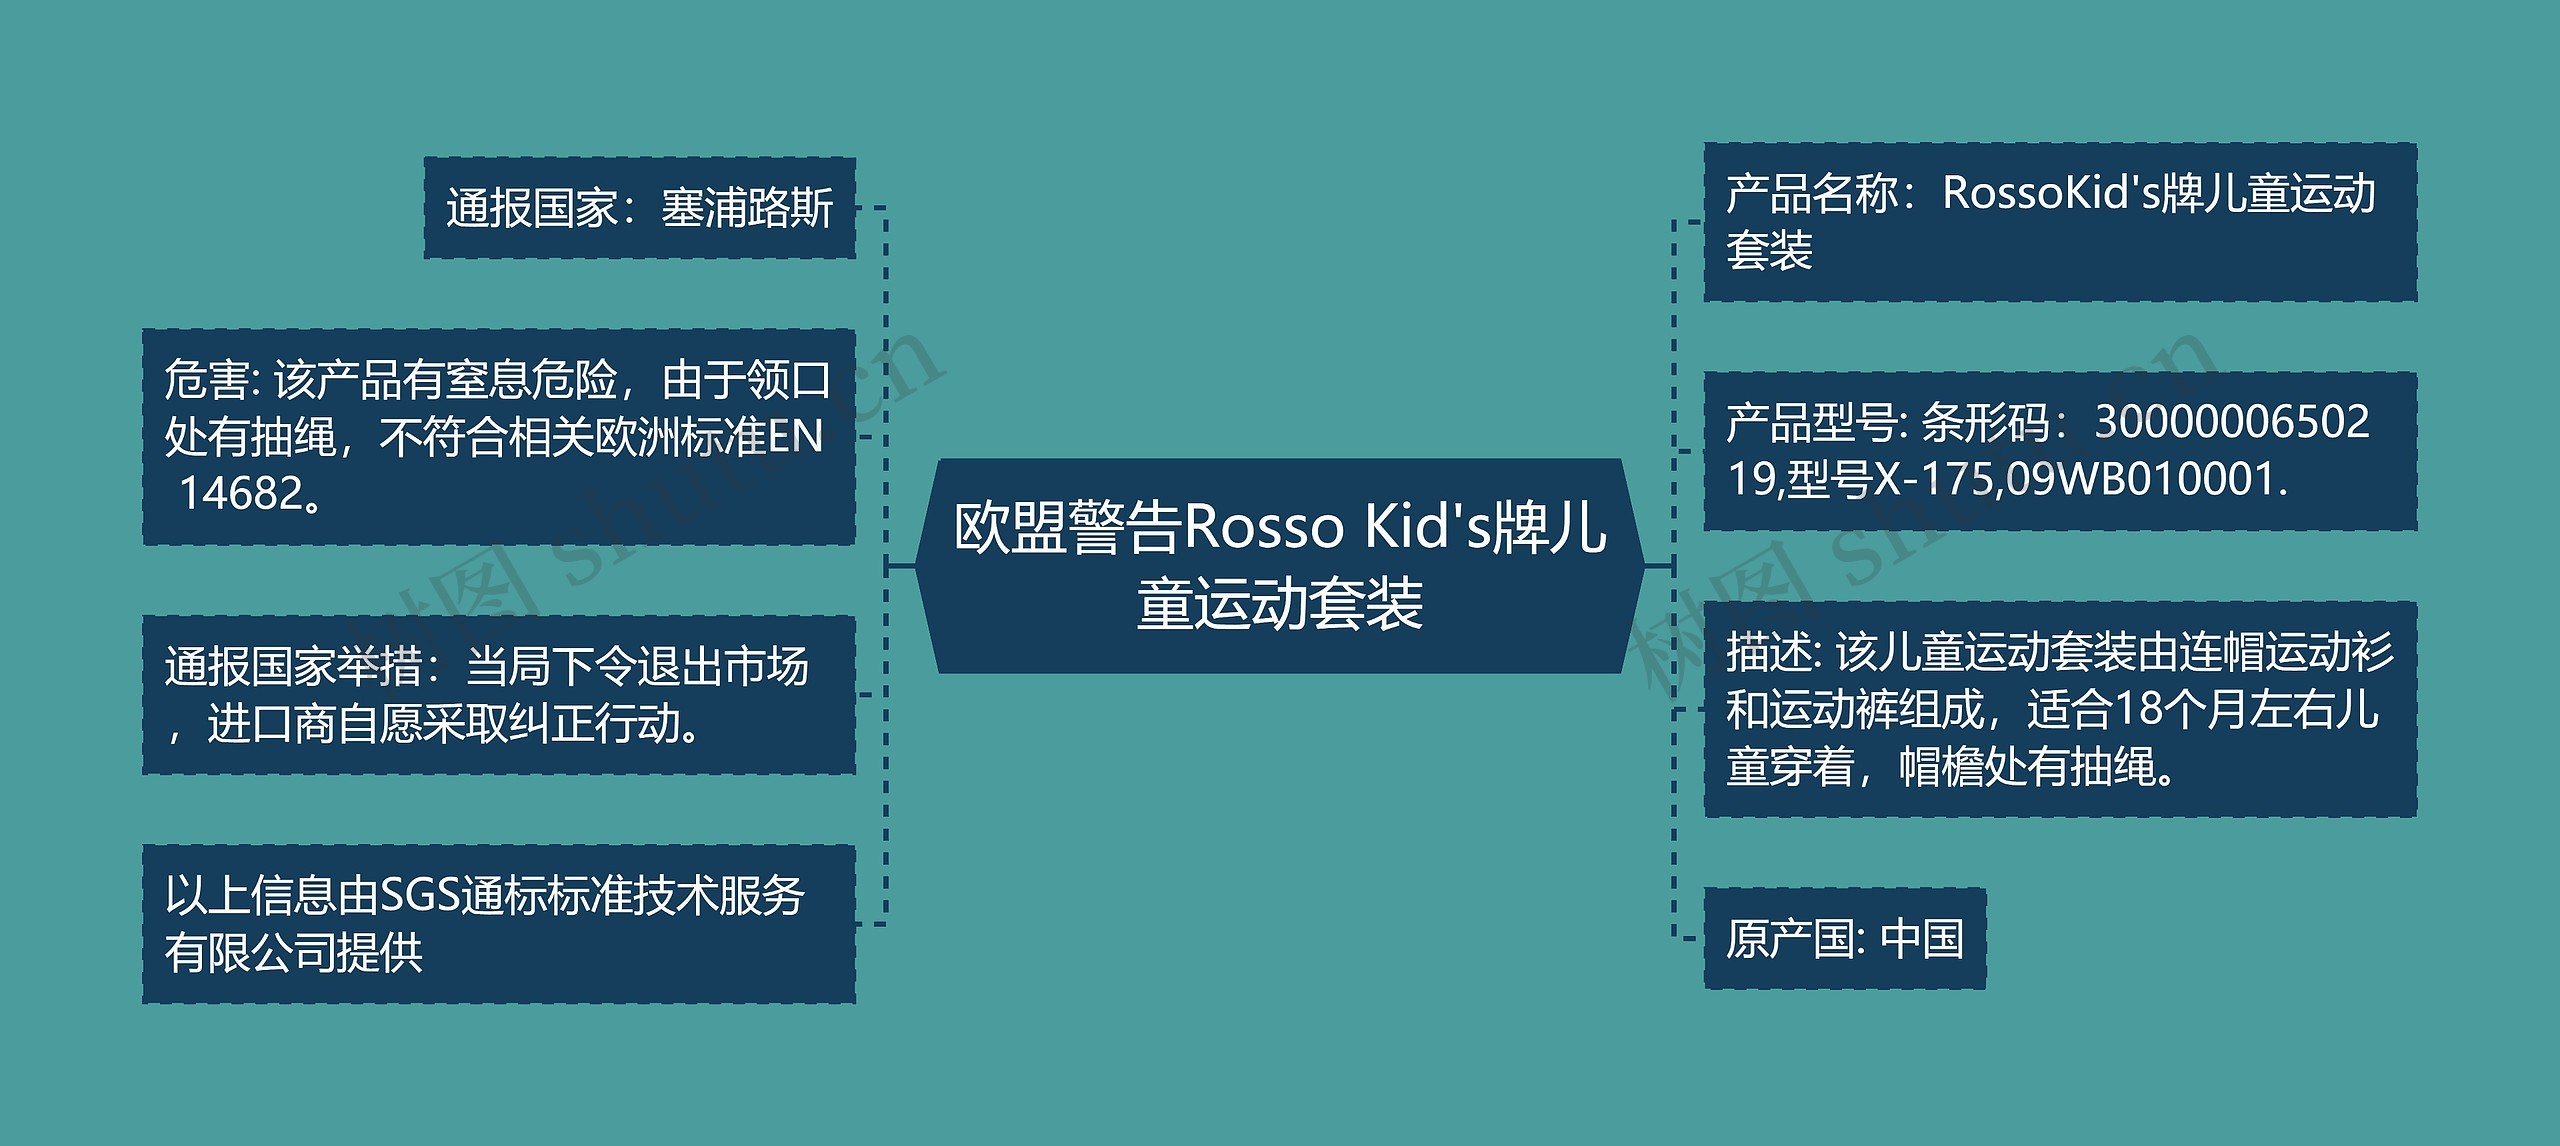 欧盟警告Rosso Kid's牌儿童运动套装思维导图